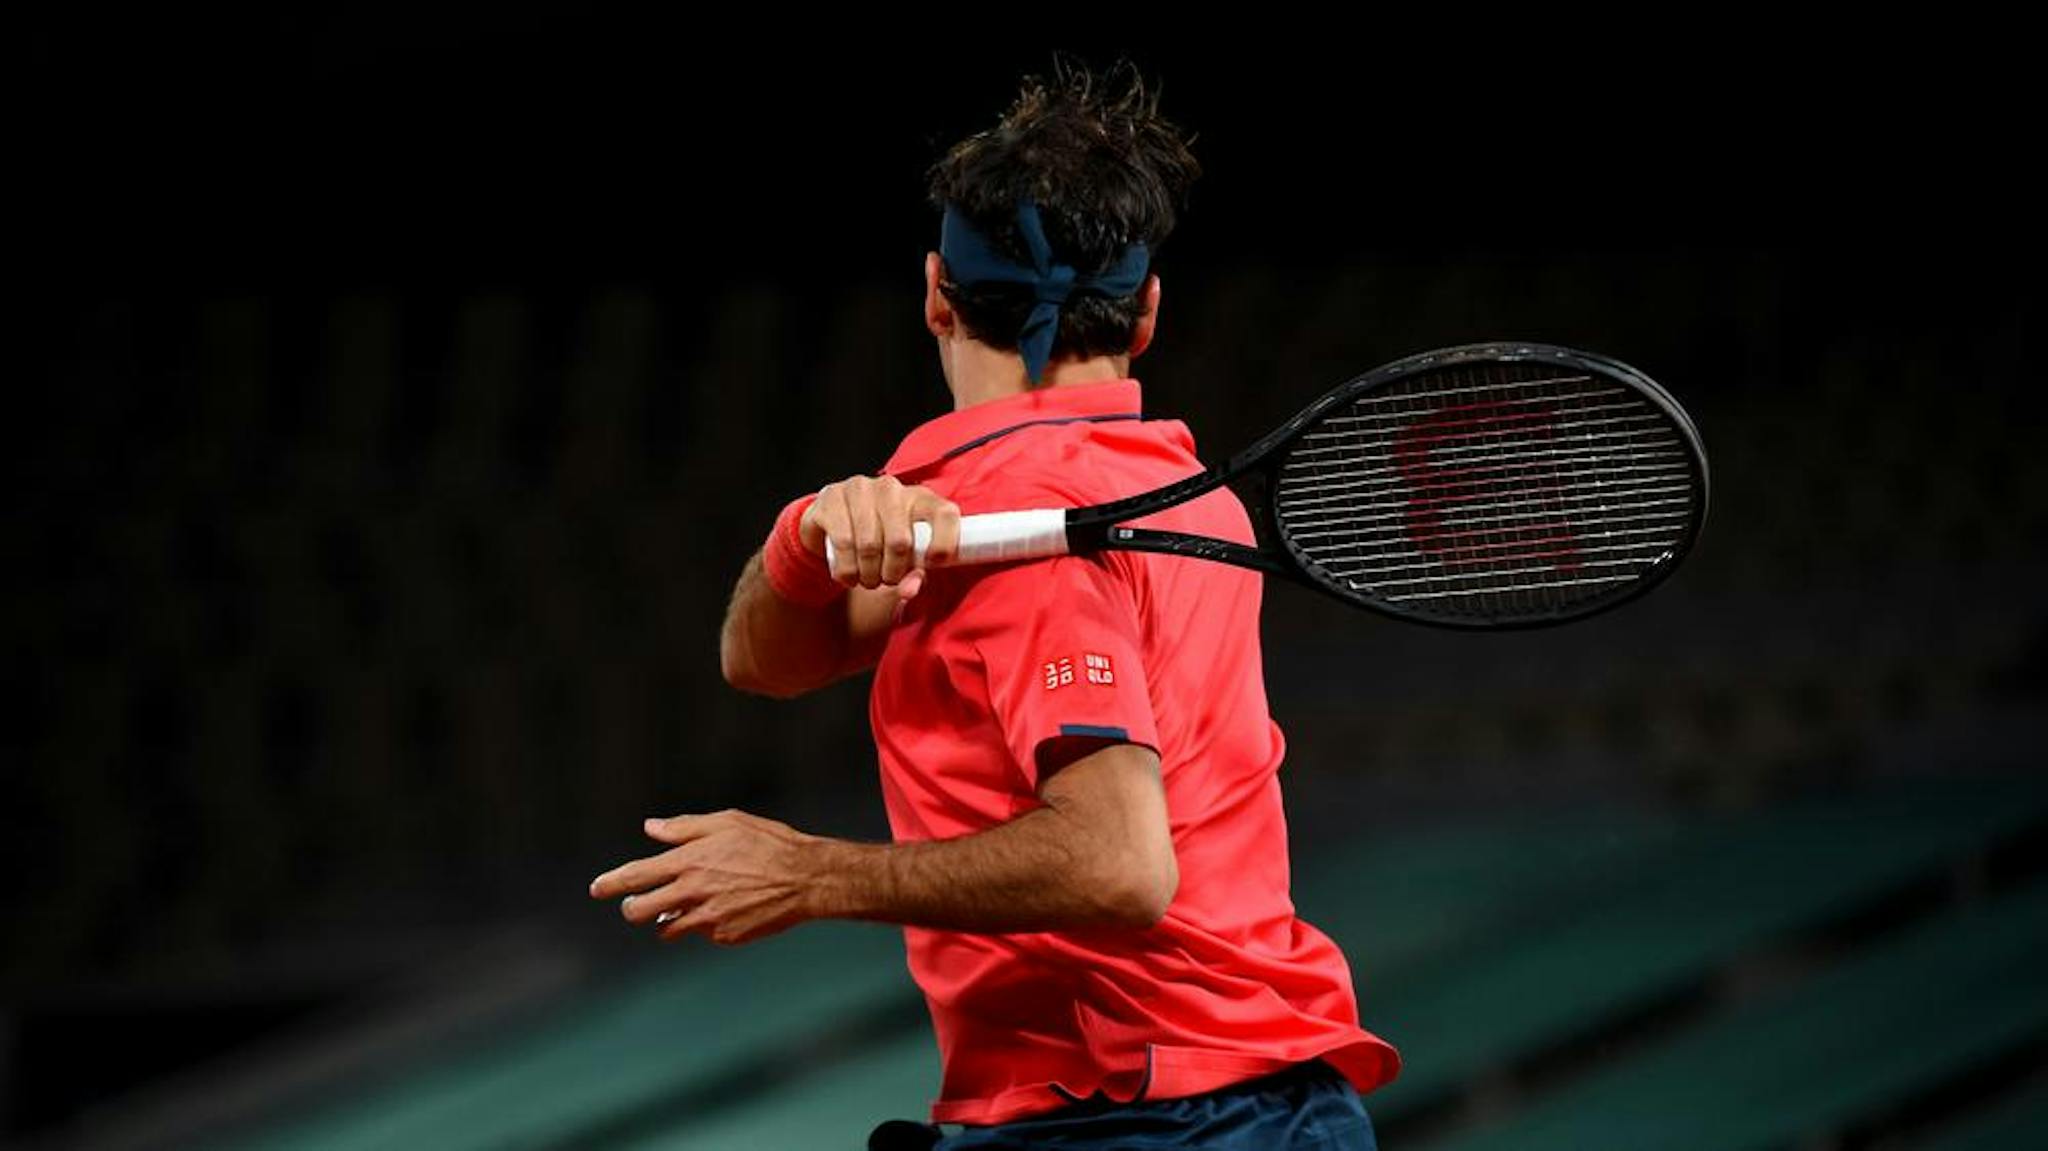 Avant de prendre se retraite professionnelle, Roger Federer avait effectué un changement de raquette remarquée et efficace lors de ses dernières années sur le circuit.